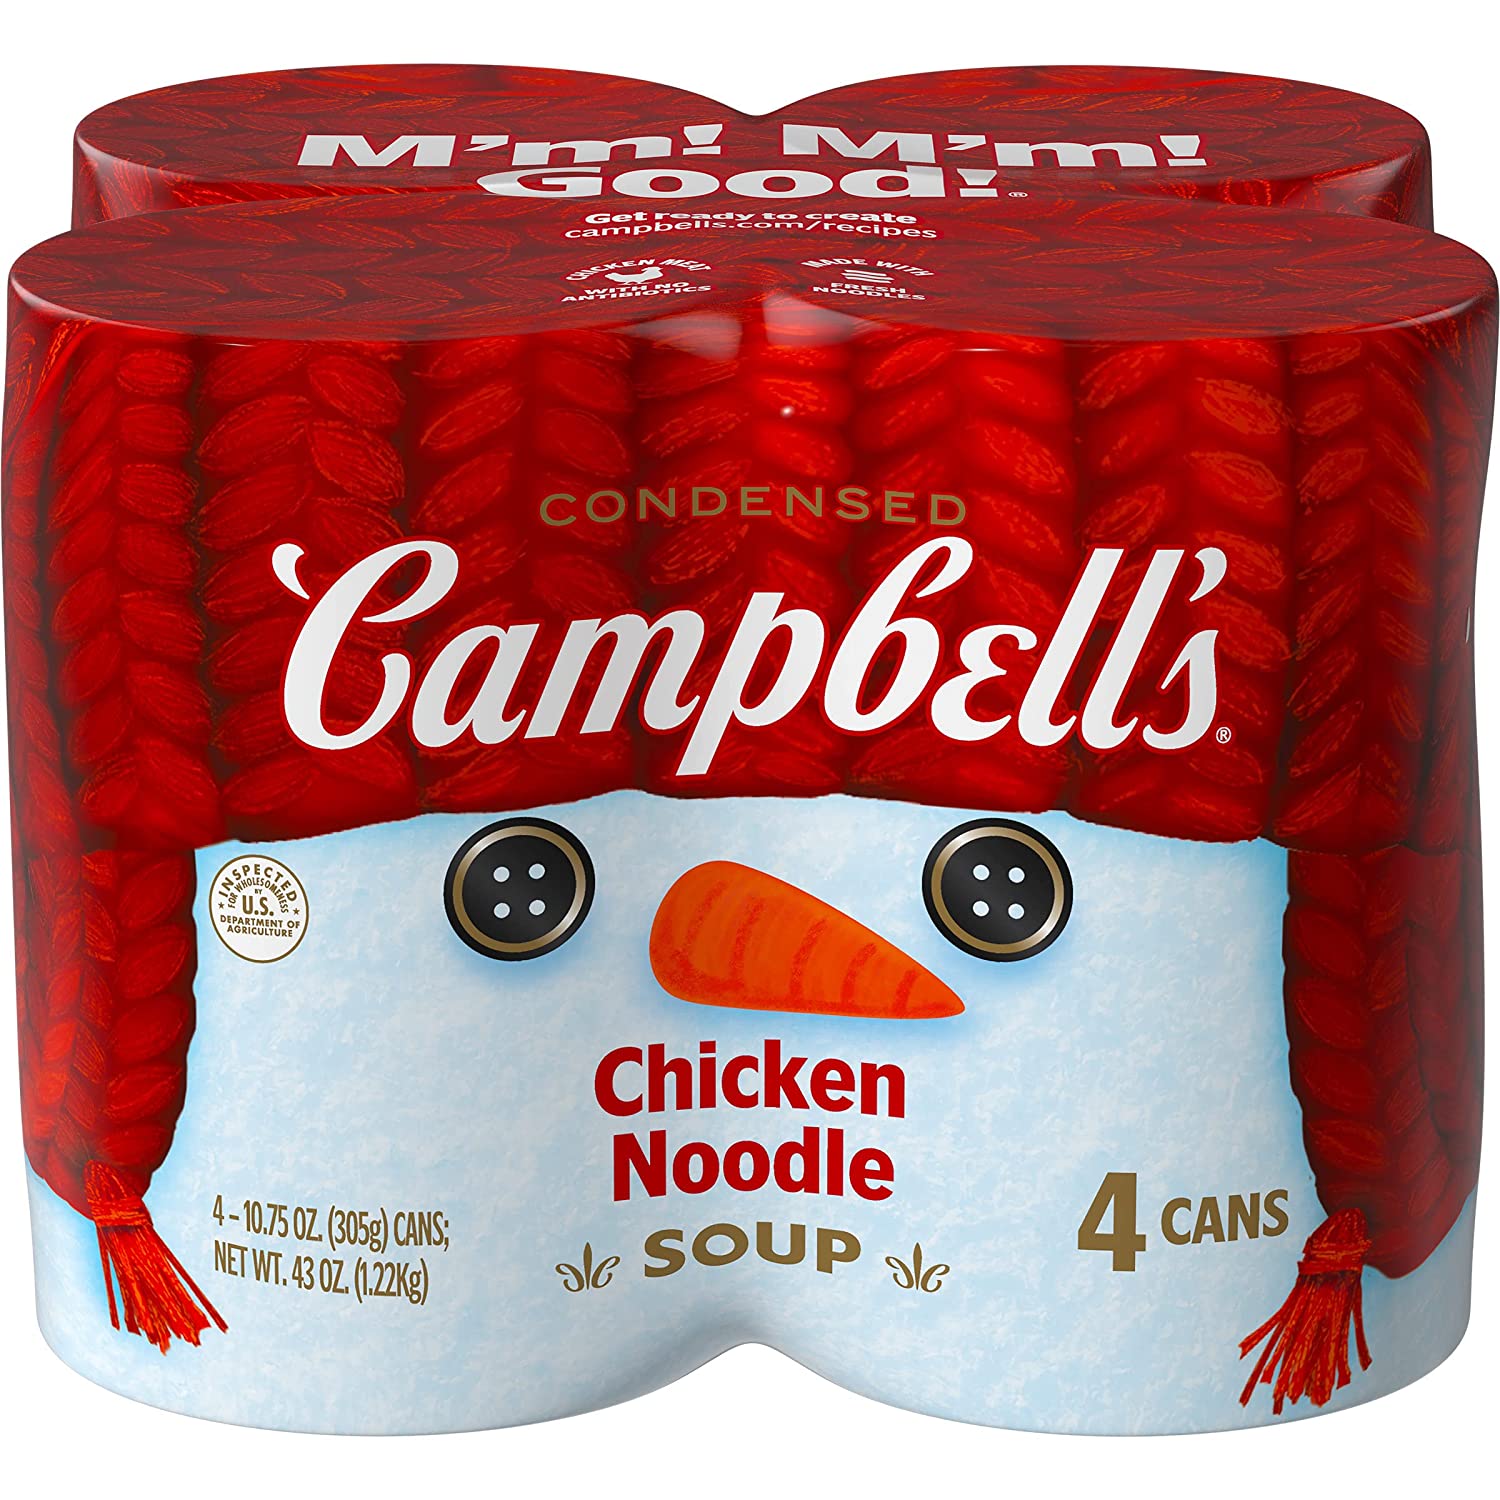 【美味靈魂】Campbell's 濃縮雞湯罐 10.75oz x 4 Pack $7.00​